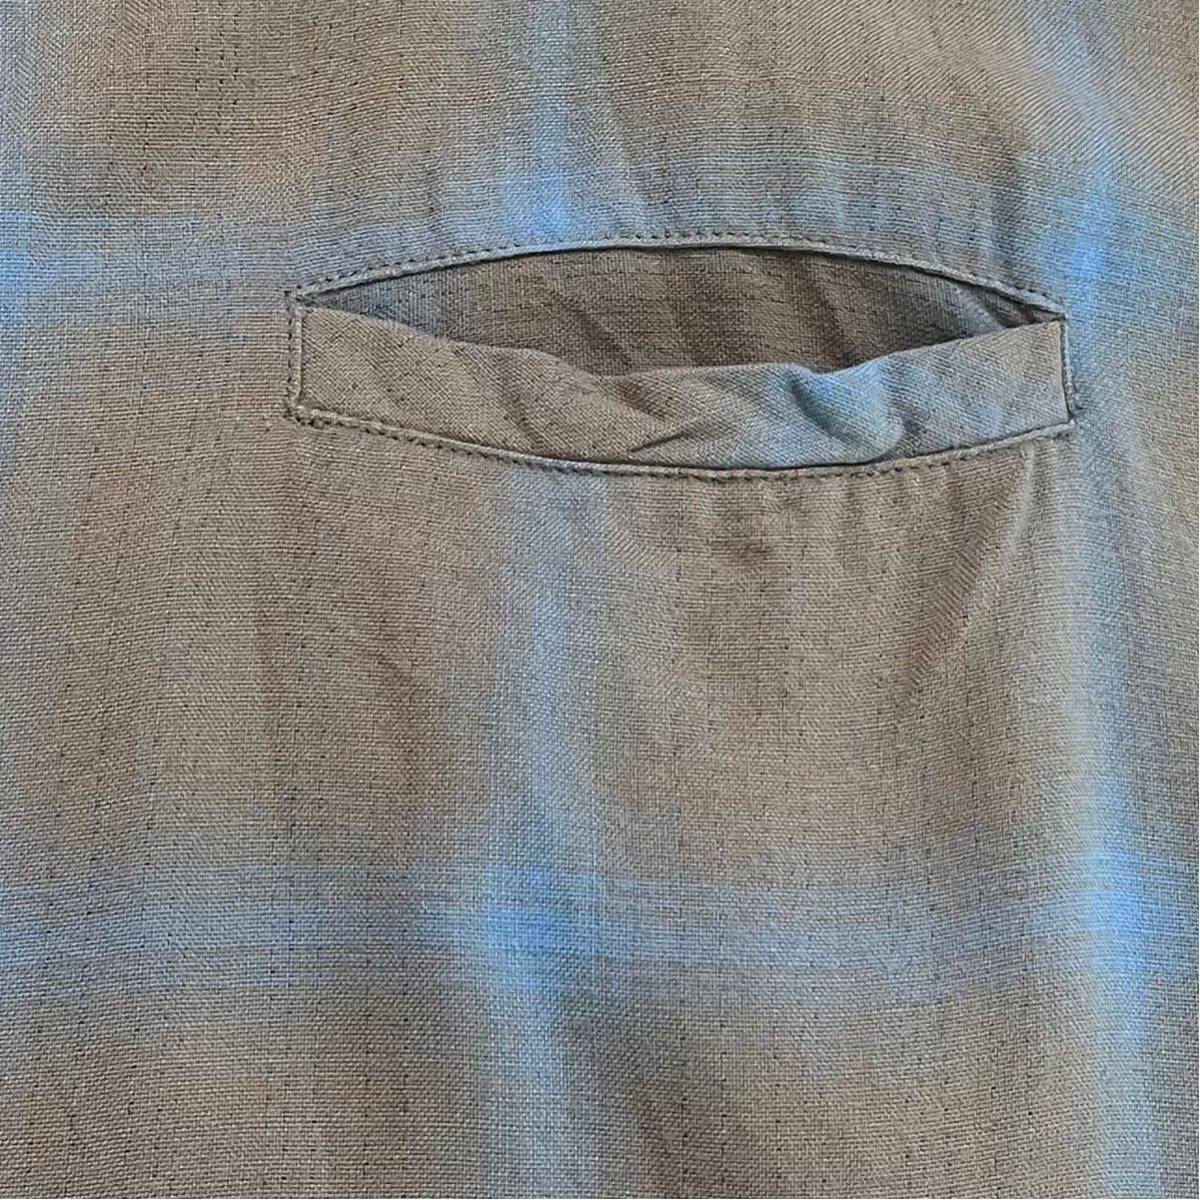 k205 60 年代 ビンテージ D'ORO DESIGNS オンブレ チェック 柄 オープンカラー ボックス シルエット シャツ M shirt vintage ビンテージ_画像5